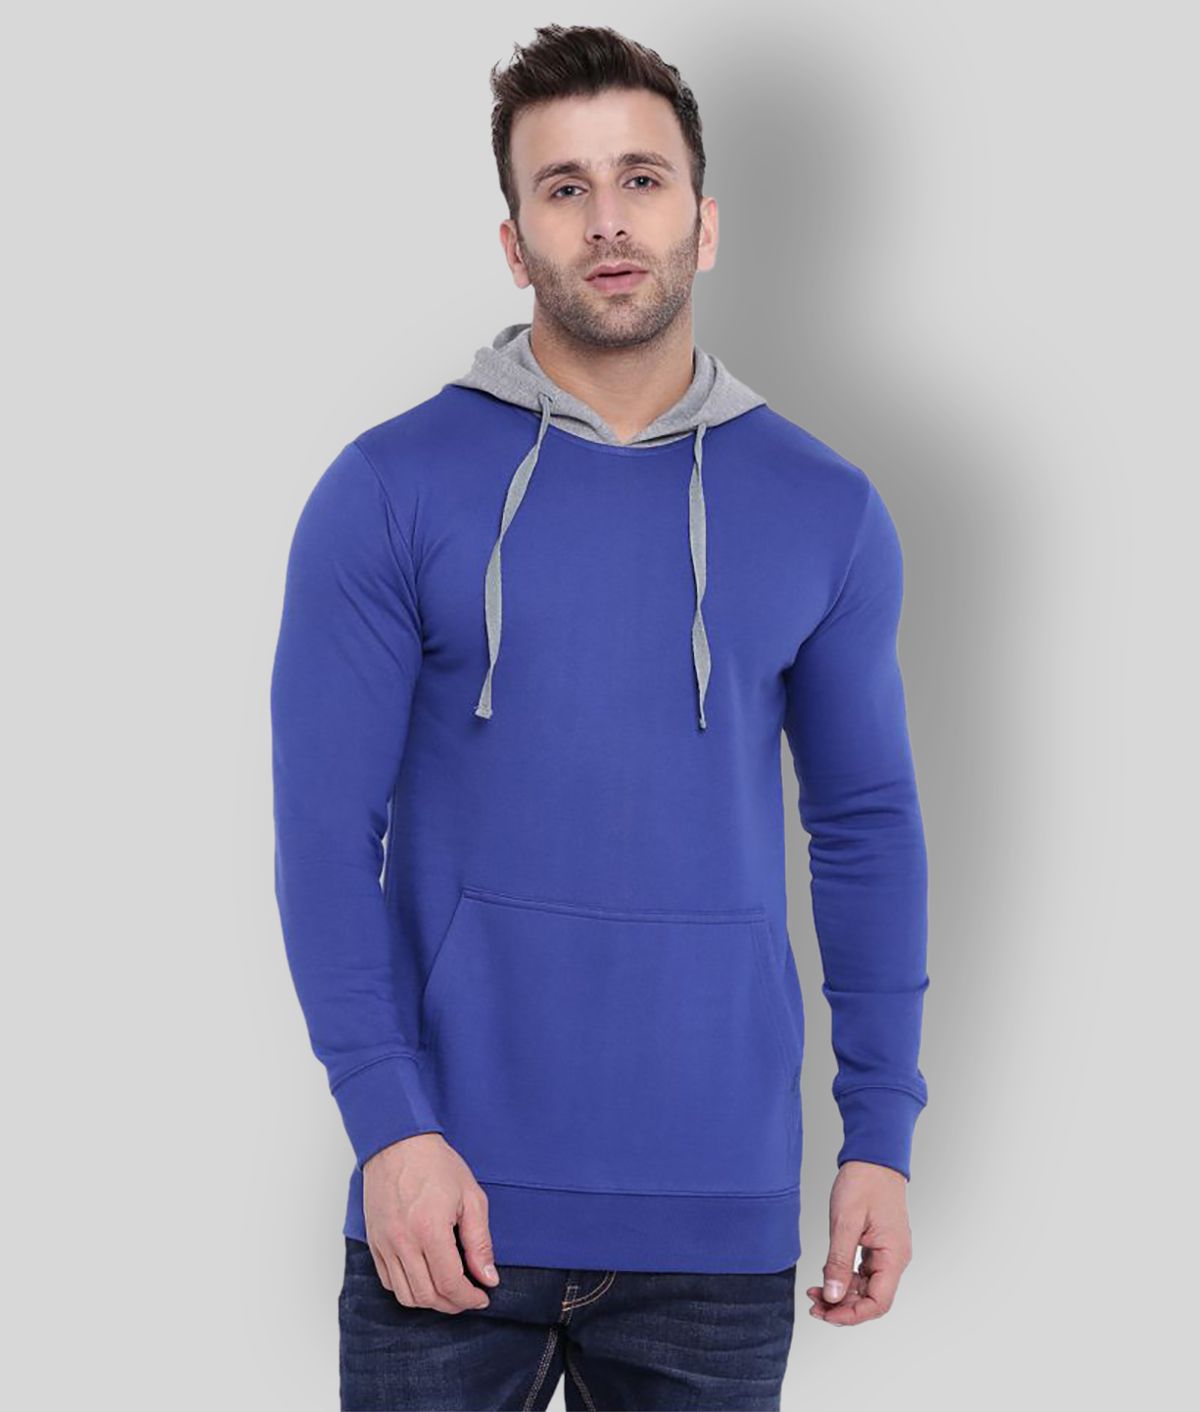 Gritstones Blue Sweatshirt Pack of 1